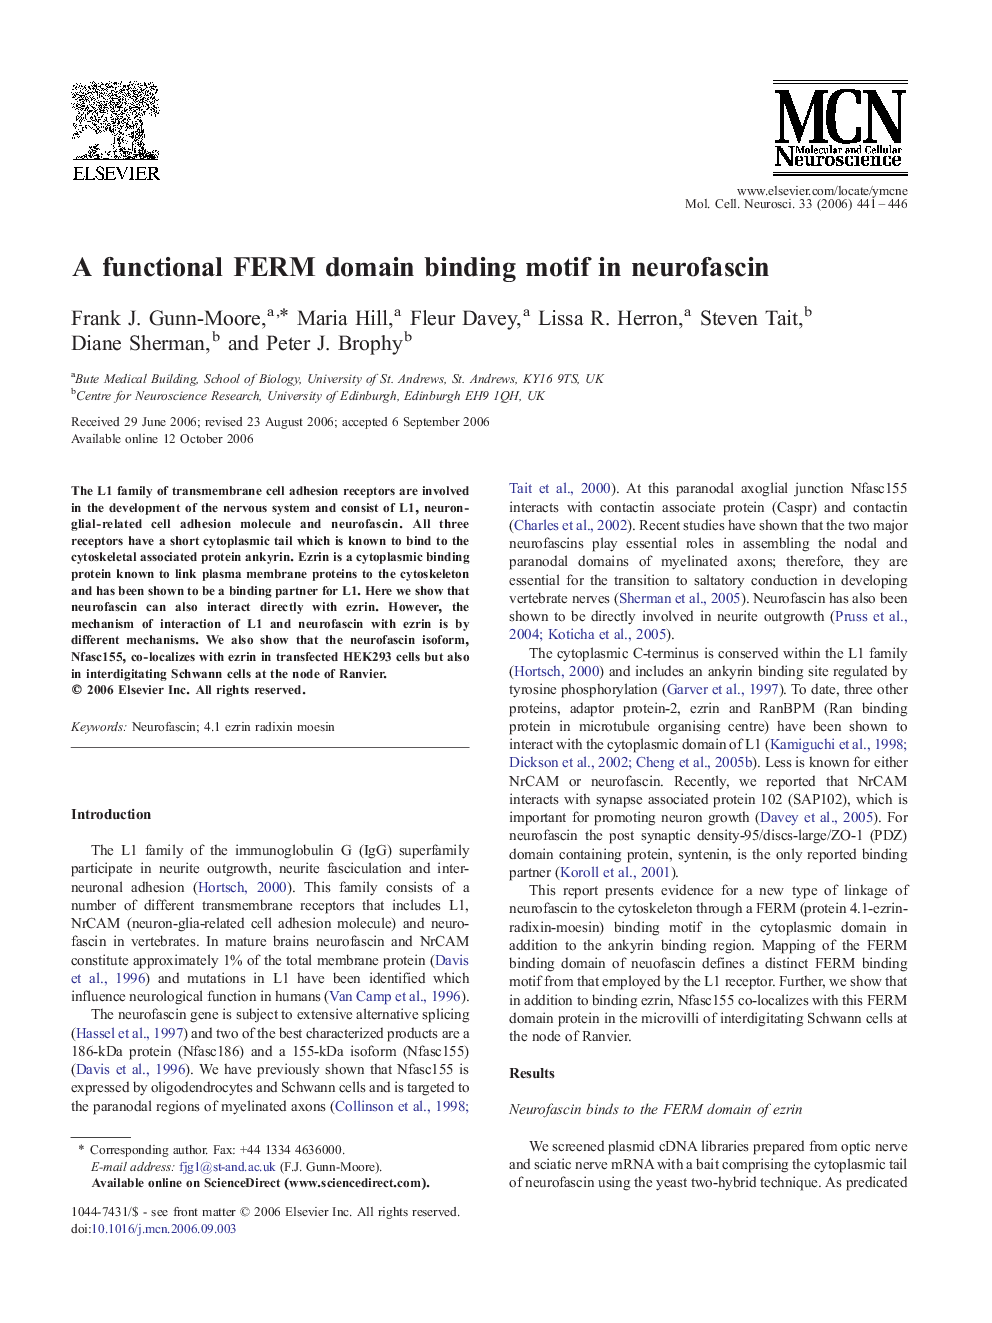 A functional FERM domain binding motif in neurofascin